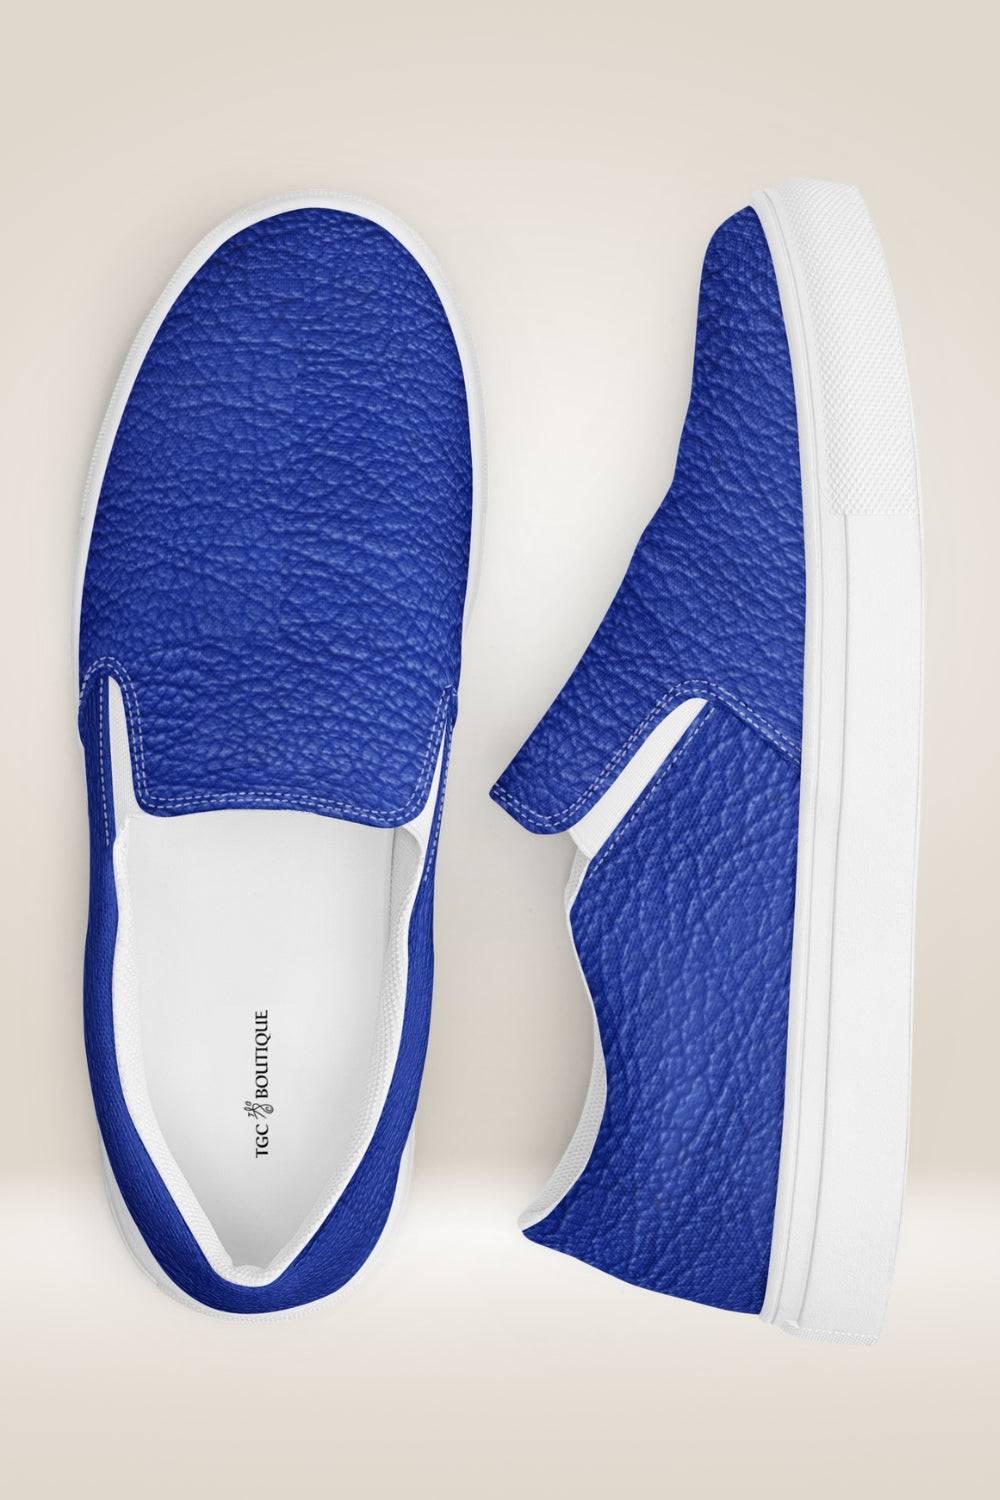 Leather Print Slip On Blue Canvas Shoes - TGC Boutique - Canvas Shoes